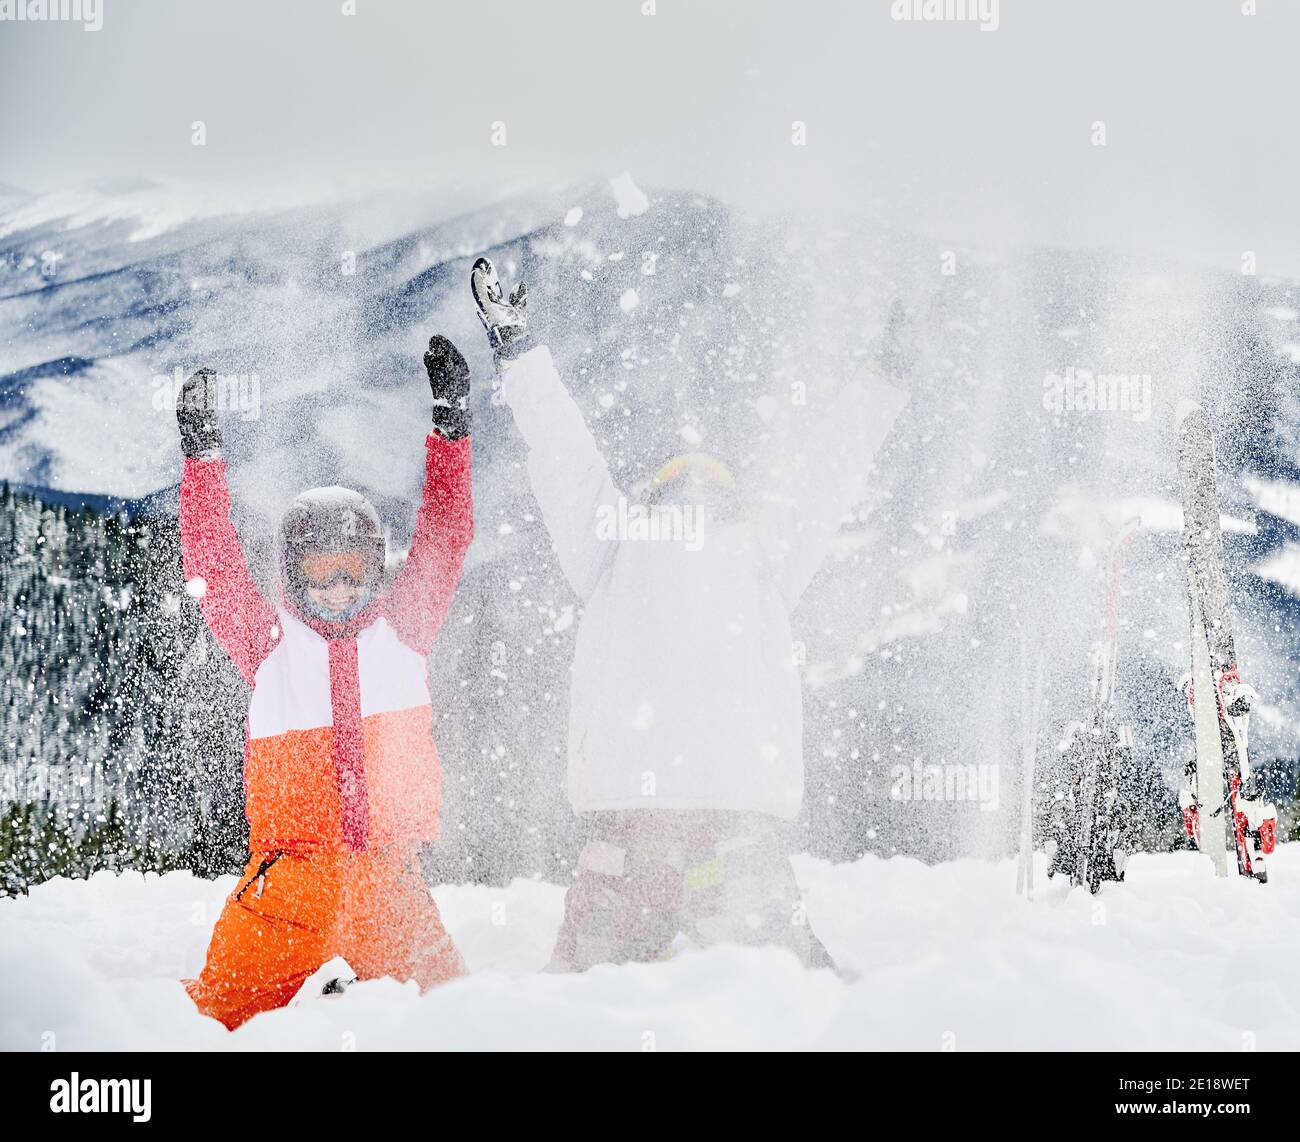 Dos esquiadores en trajes de esquí y cascos arrojando nieve fresca en polvo en el aire, divirtiéndose en la estación de esquí con montañas en el fondo. Concepto de actividades deportivas de invierno, diversión y relaciones. Foto de stock